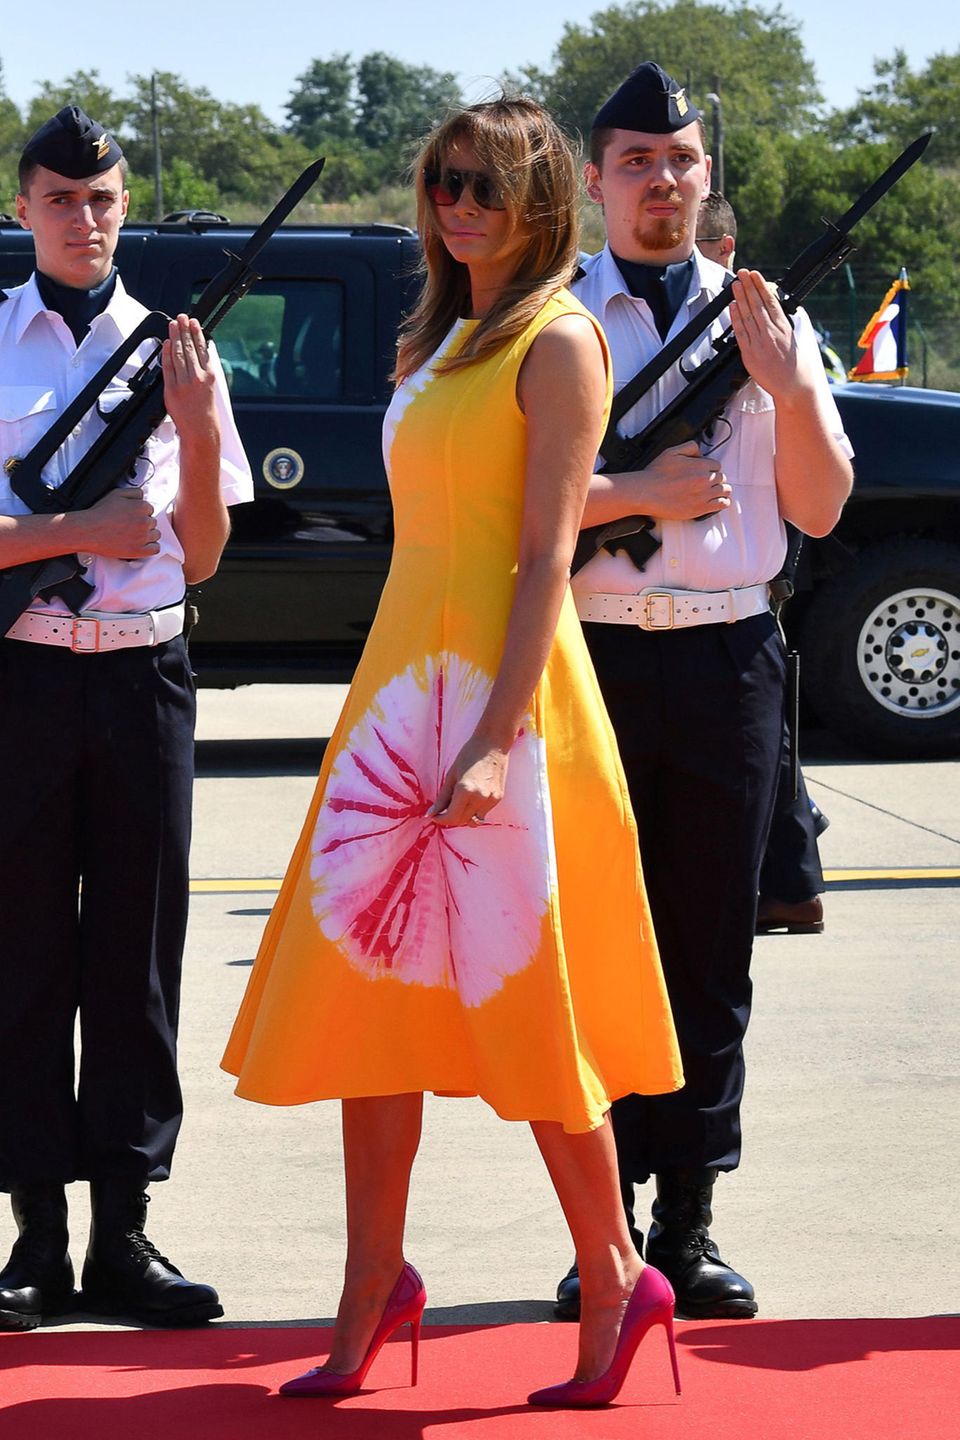 Für ihre Ankunft in Biarritz, wo der diesjährige G7-Gipfel stattfindet, hat sich Melanie Trump einen besonders knalligen Look von Calvin Klein ausgesucht. Ob Gelb und Pink mit passenden High Heels wohl gute Laune verbreiten sollen?